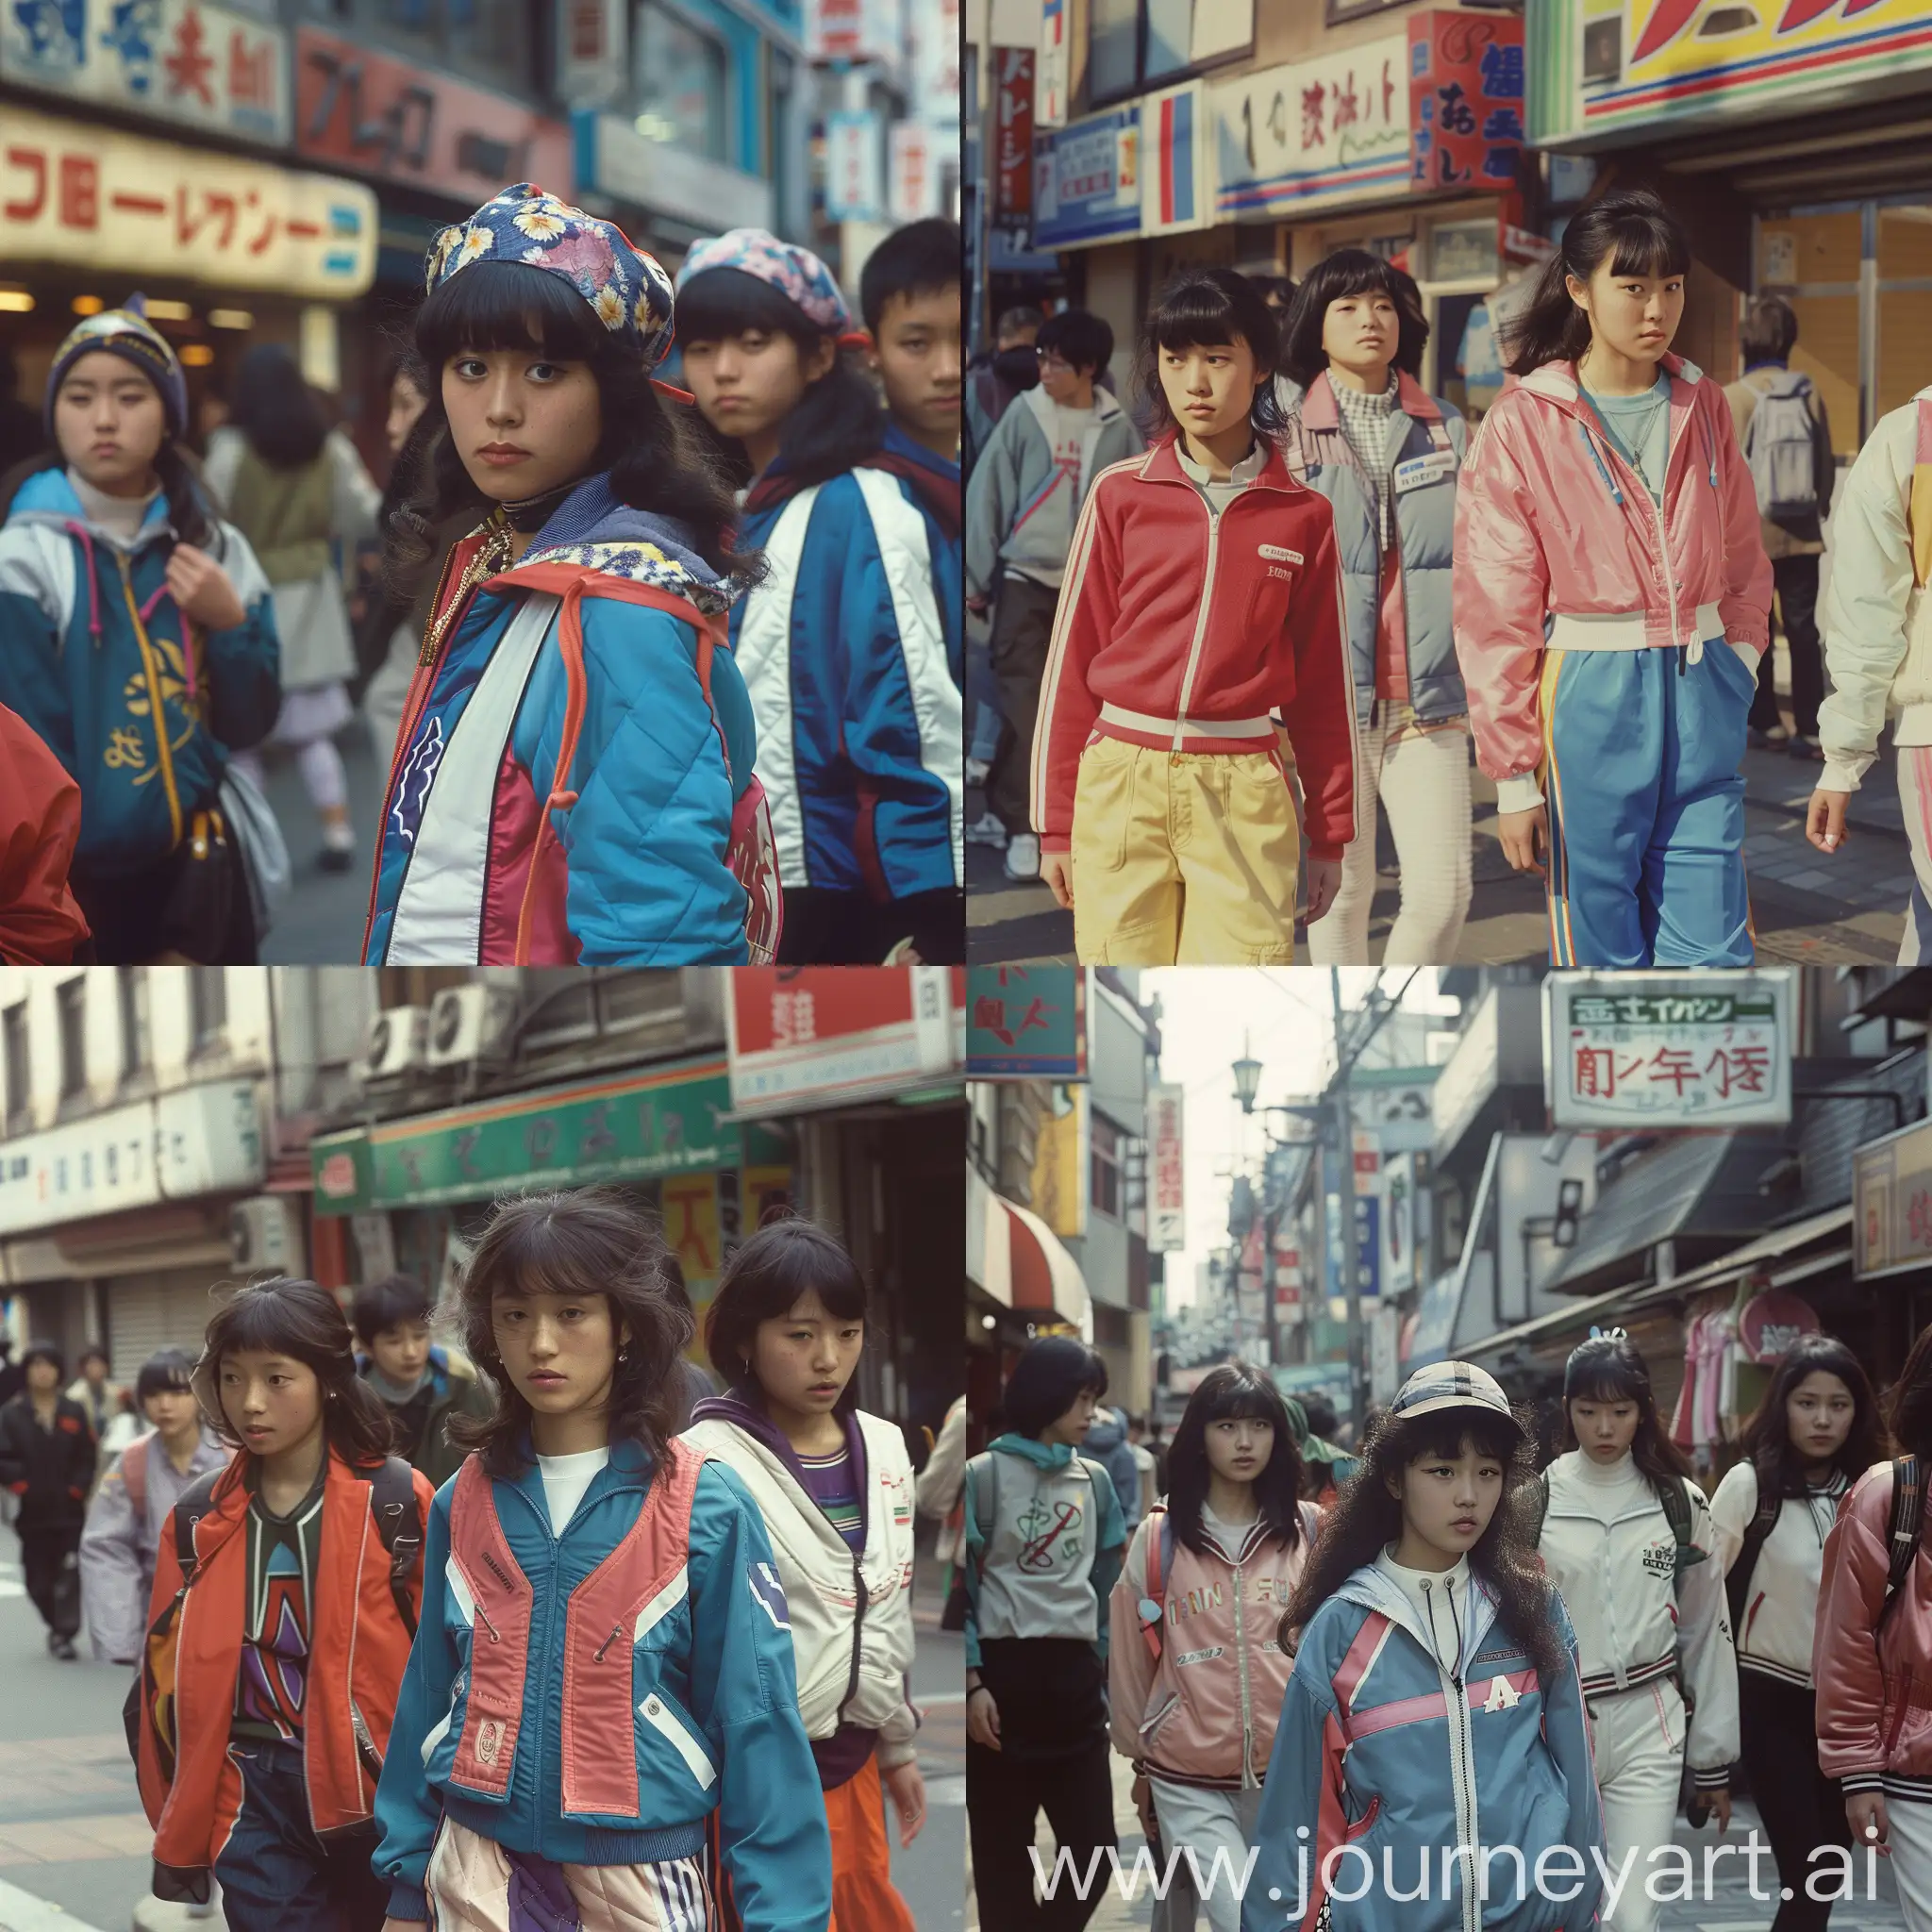 1980s-Japanese-Street-Fashion-Asian-Girls-in-Vintage-Sportswear